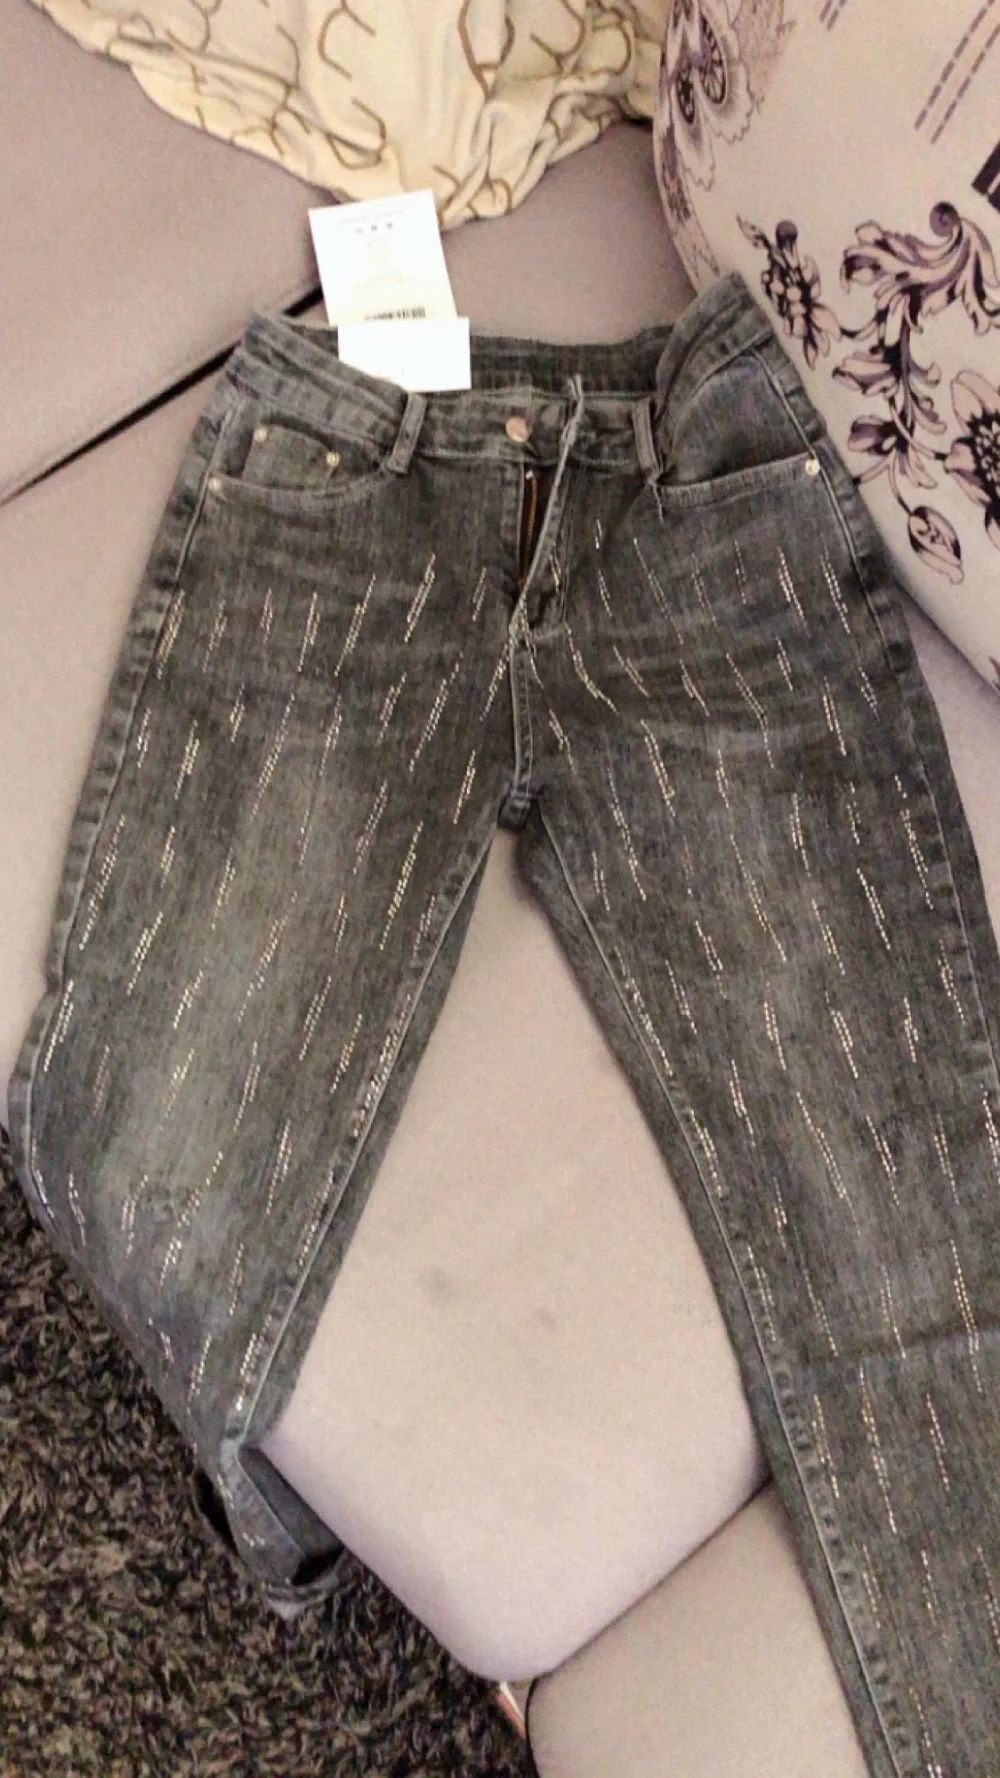 Тяжелая работа Горячая бурение дымчато-серые джинсы женские с высокой талией свободные лодыжки длина шаровары размера плюс 26-31